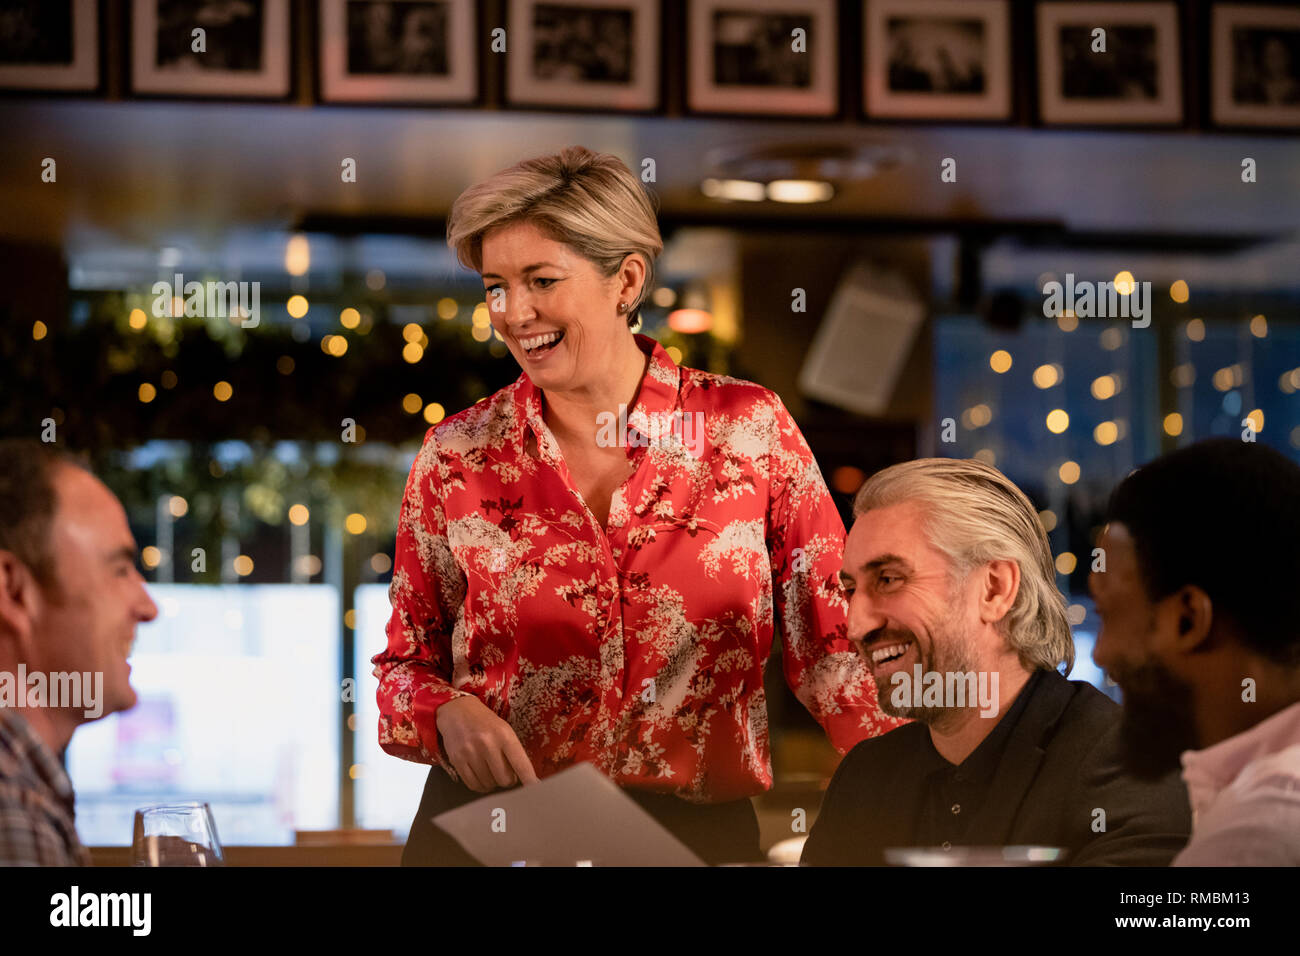 Sonriente camarera madura tomando un pedido de comida de un pequeño grupo de mediados de los hombres adultos en un restaurante. Foto de stock